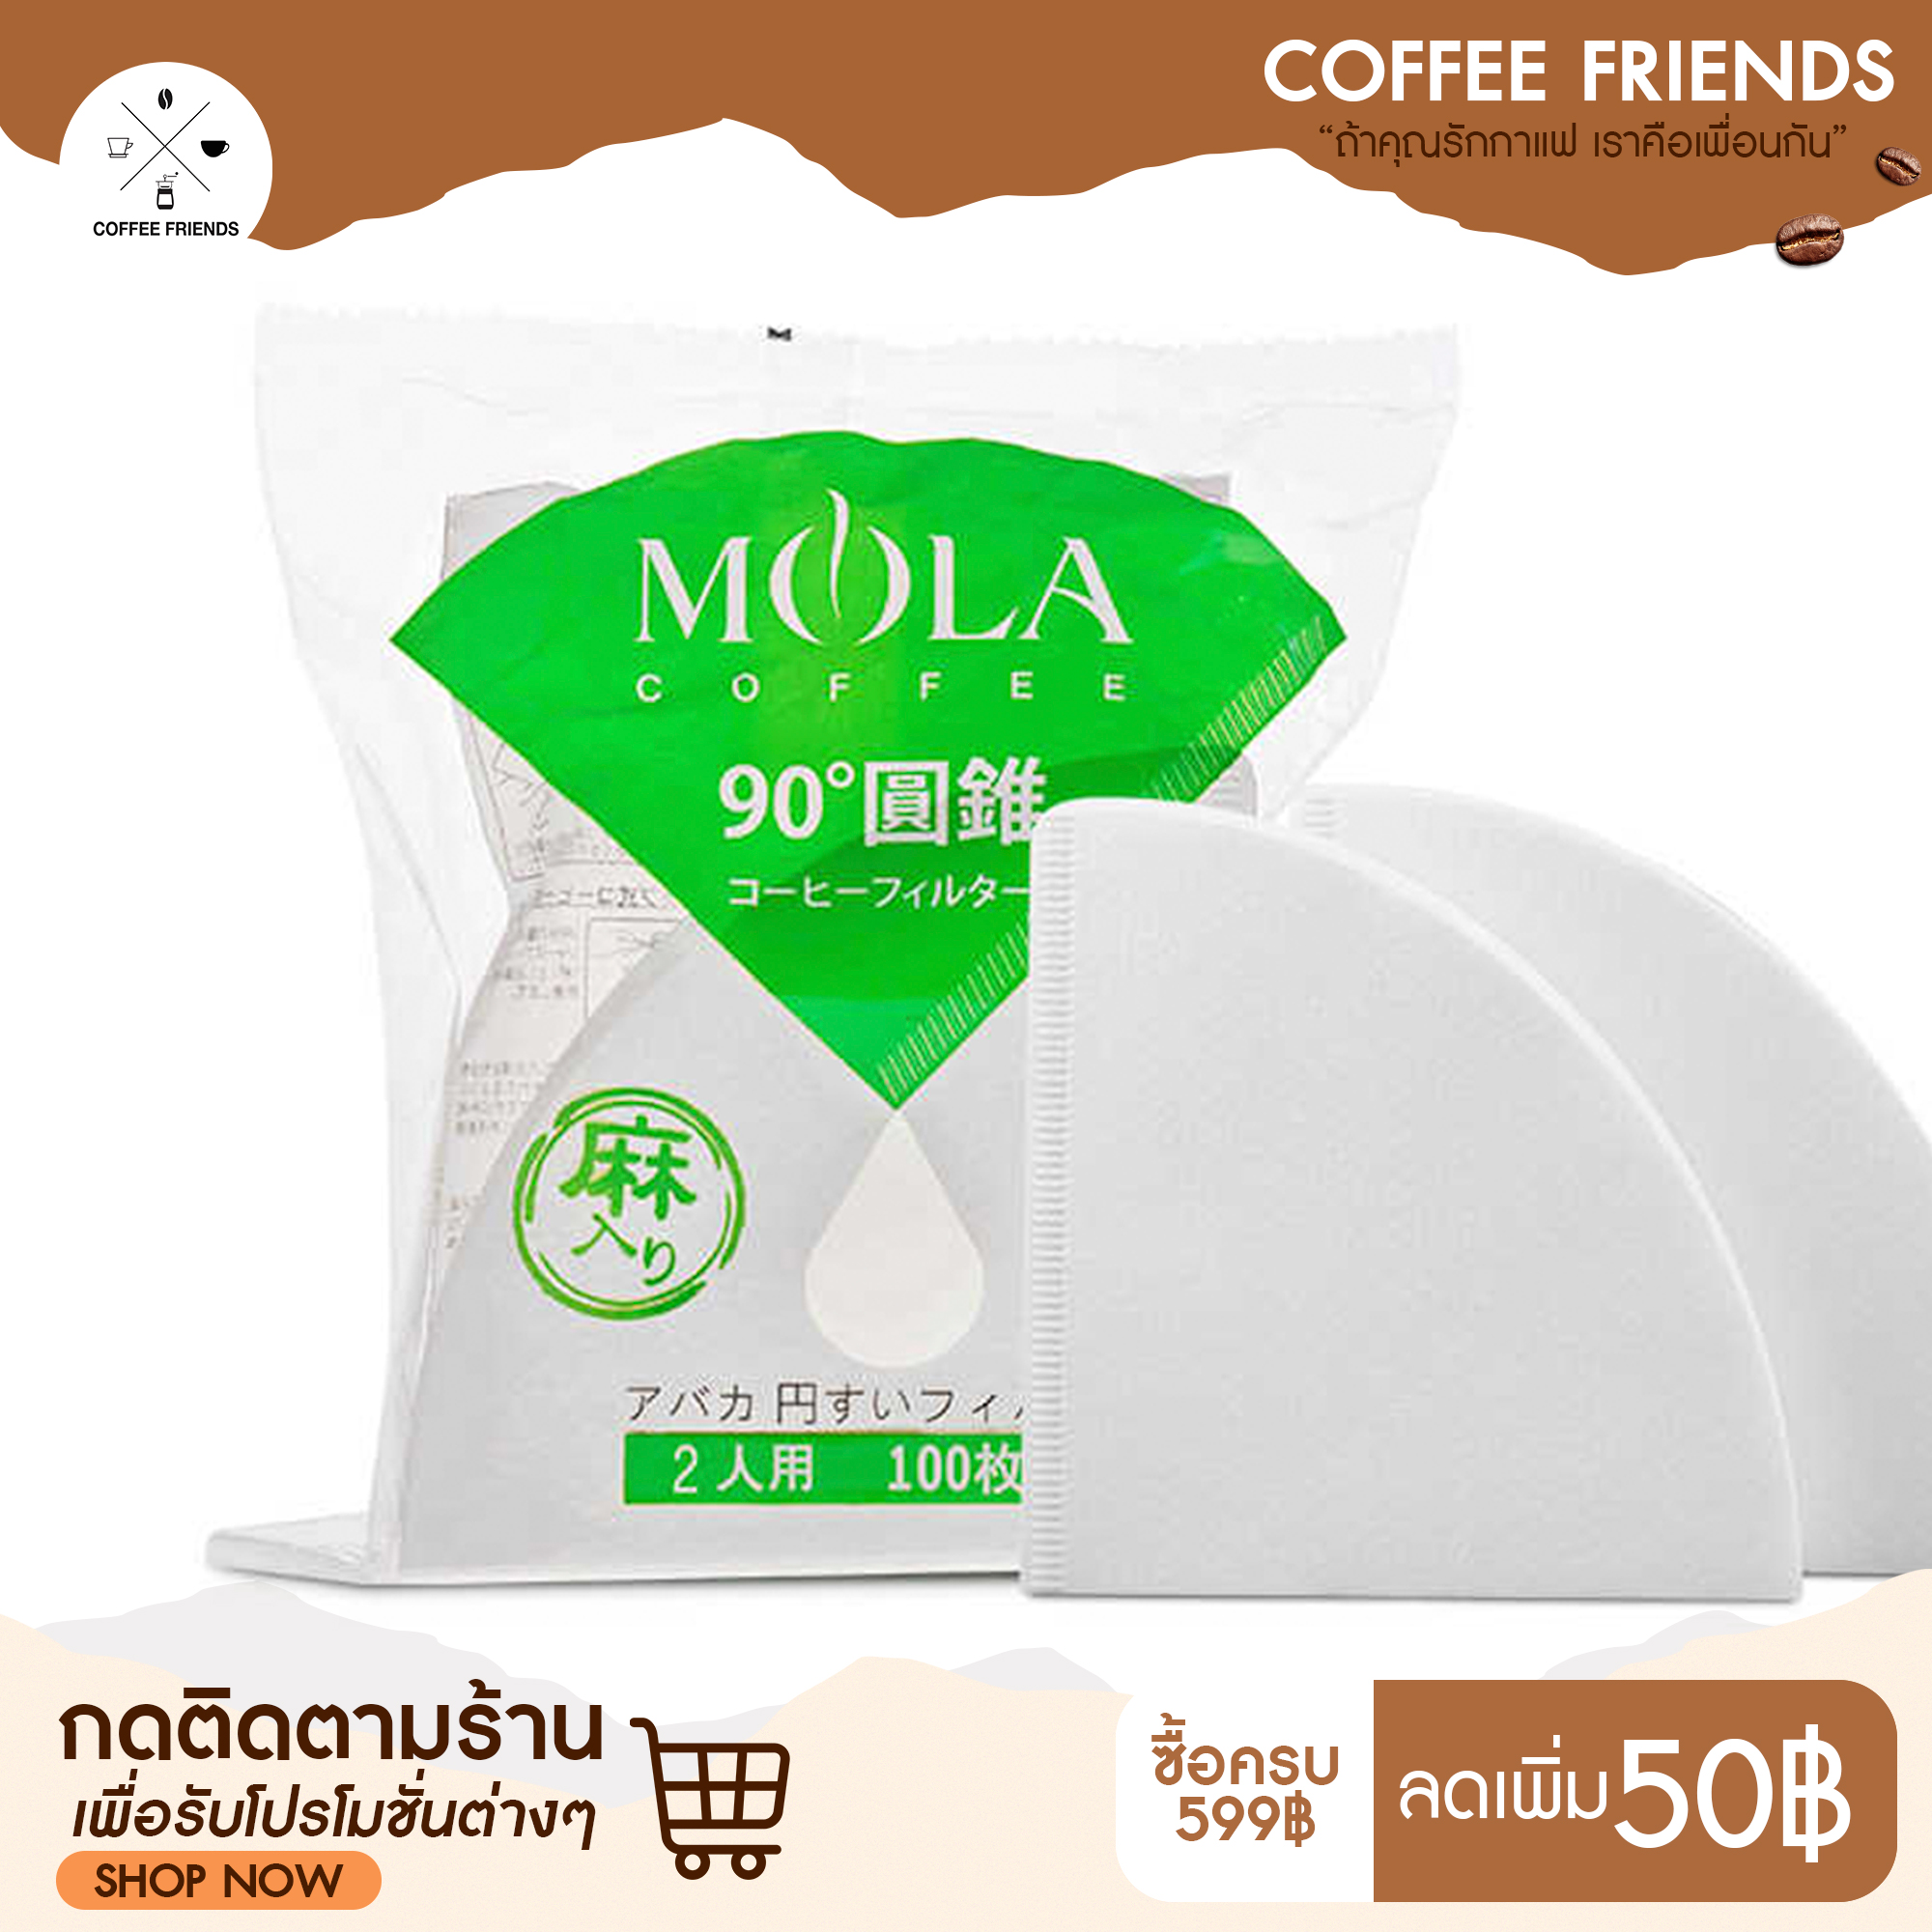 พร้อมส่งที่ไทย กระดาษดริป กระดาษกรองกาแฟ 100 แผ่น 1-2ถ้วย . 2-4 ถ้วย (90g) - Mola V60 Filter paper - coffee friends